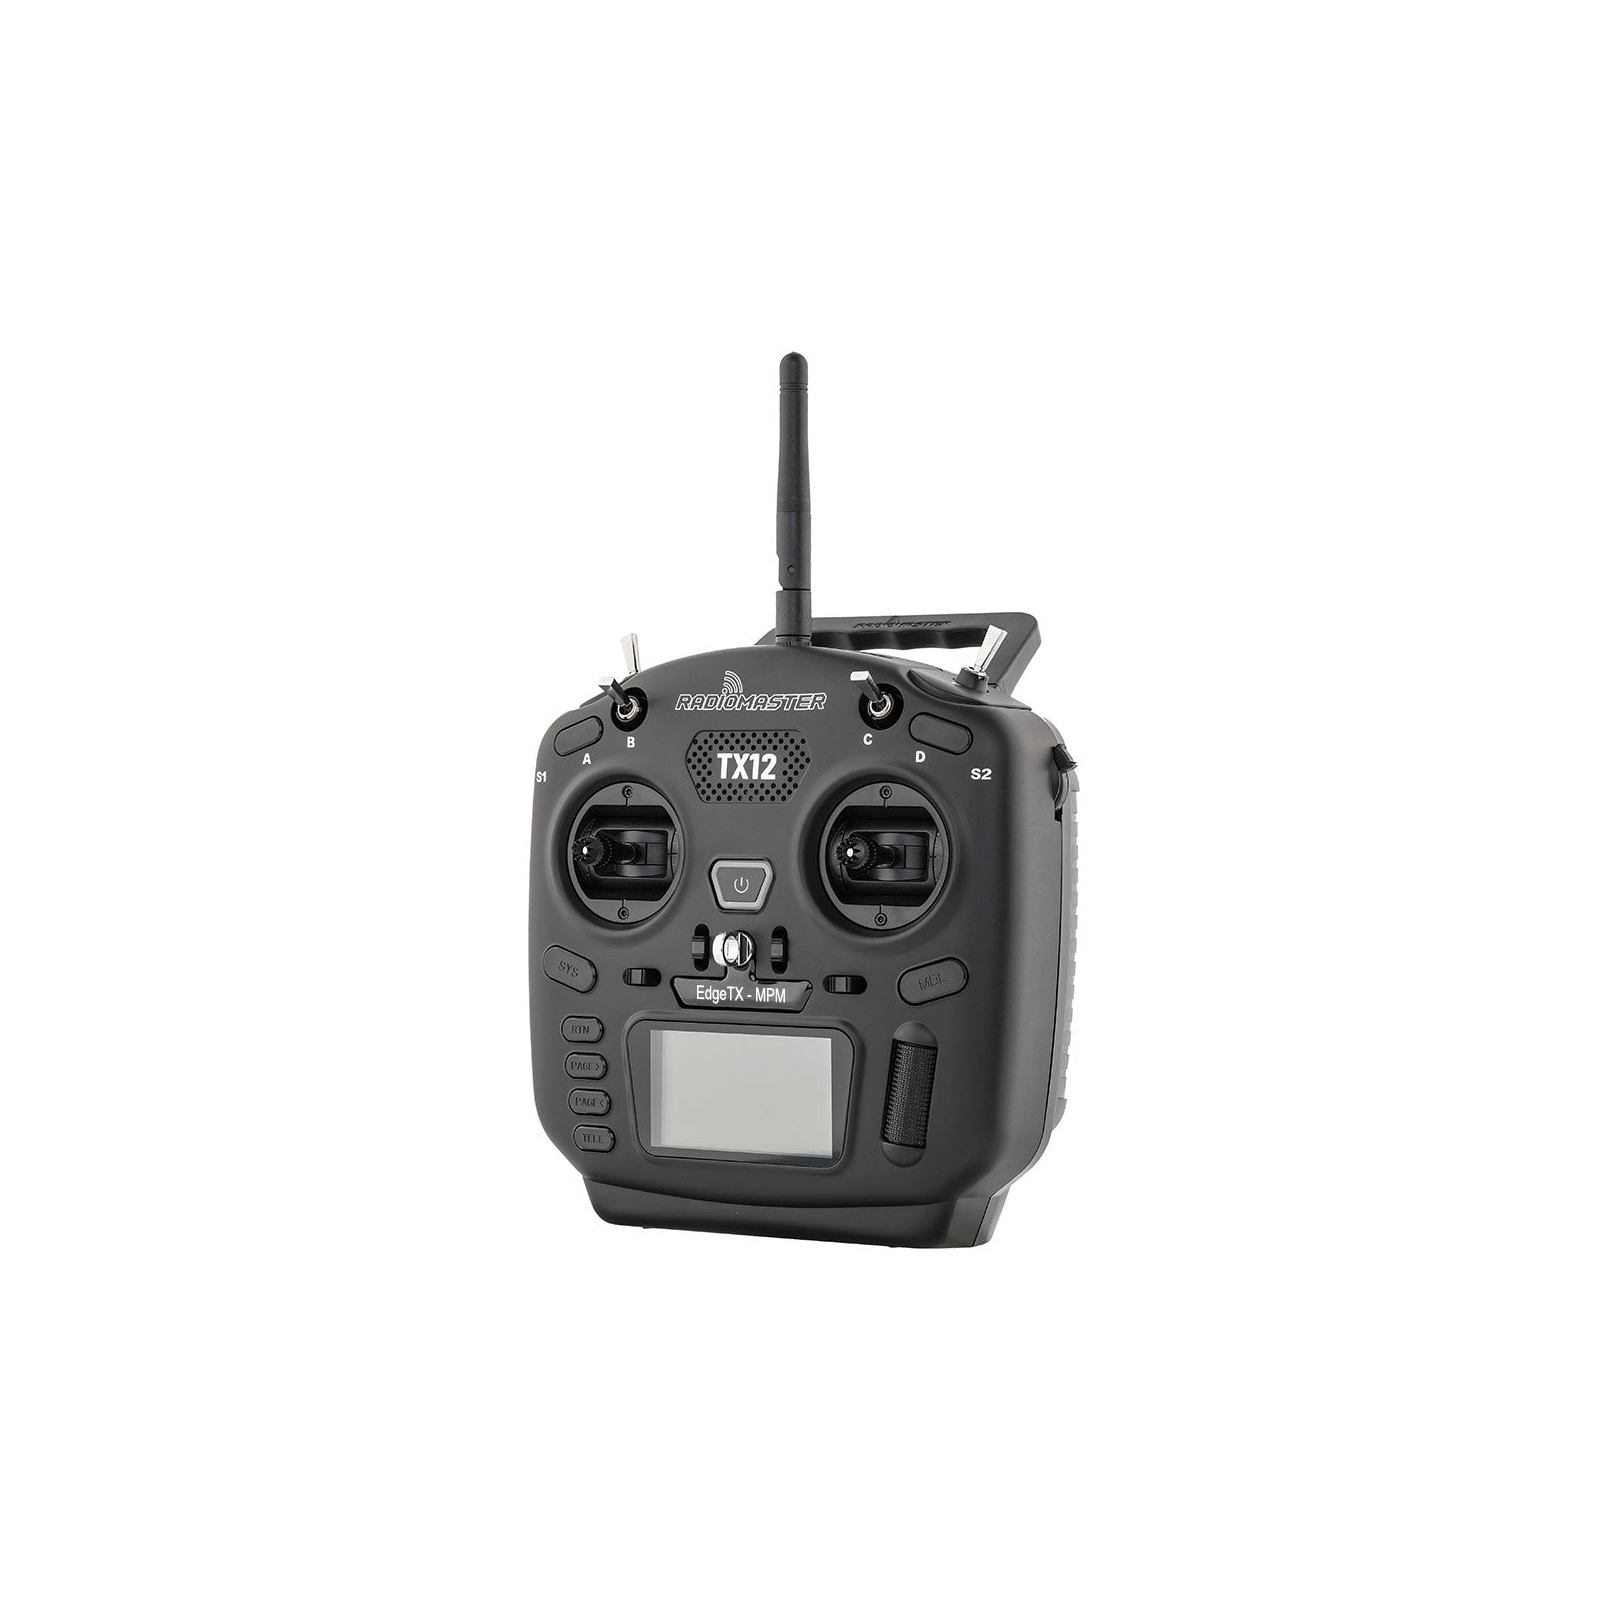 Пульт управления для дрона RadioMaster TX12 MKII ExpressLRS Edge TX (HP0157.0032-M2) изображение 2